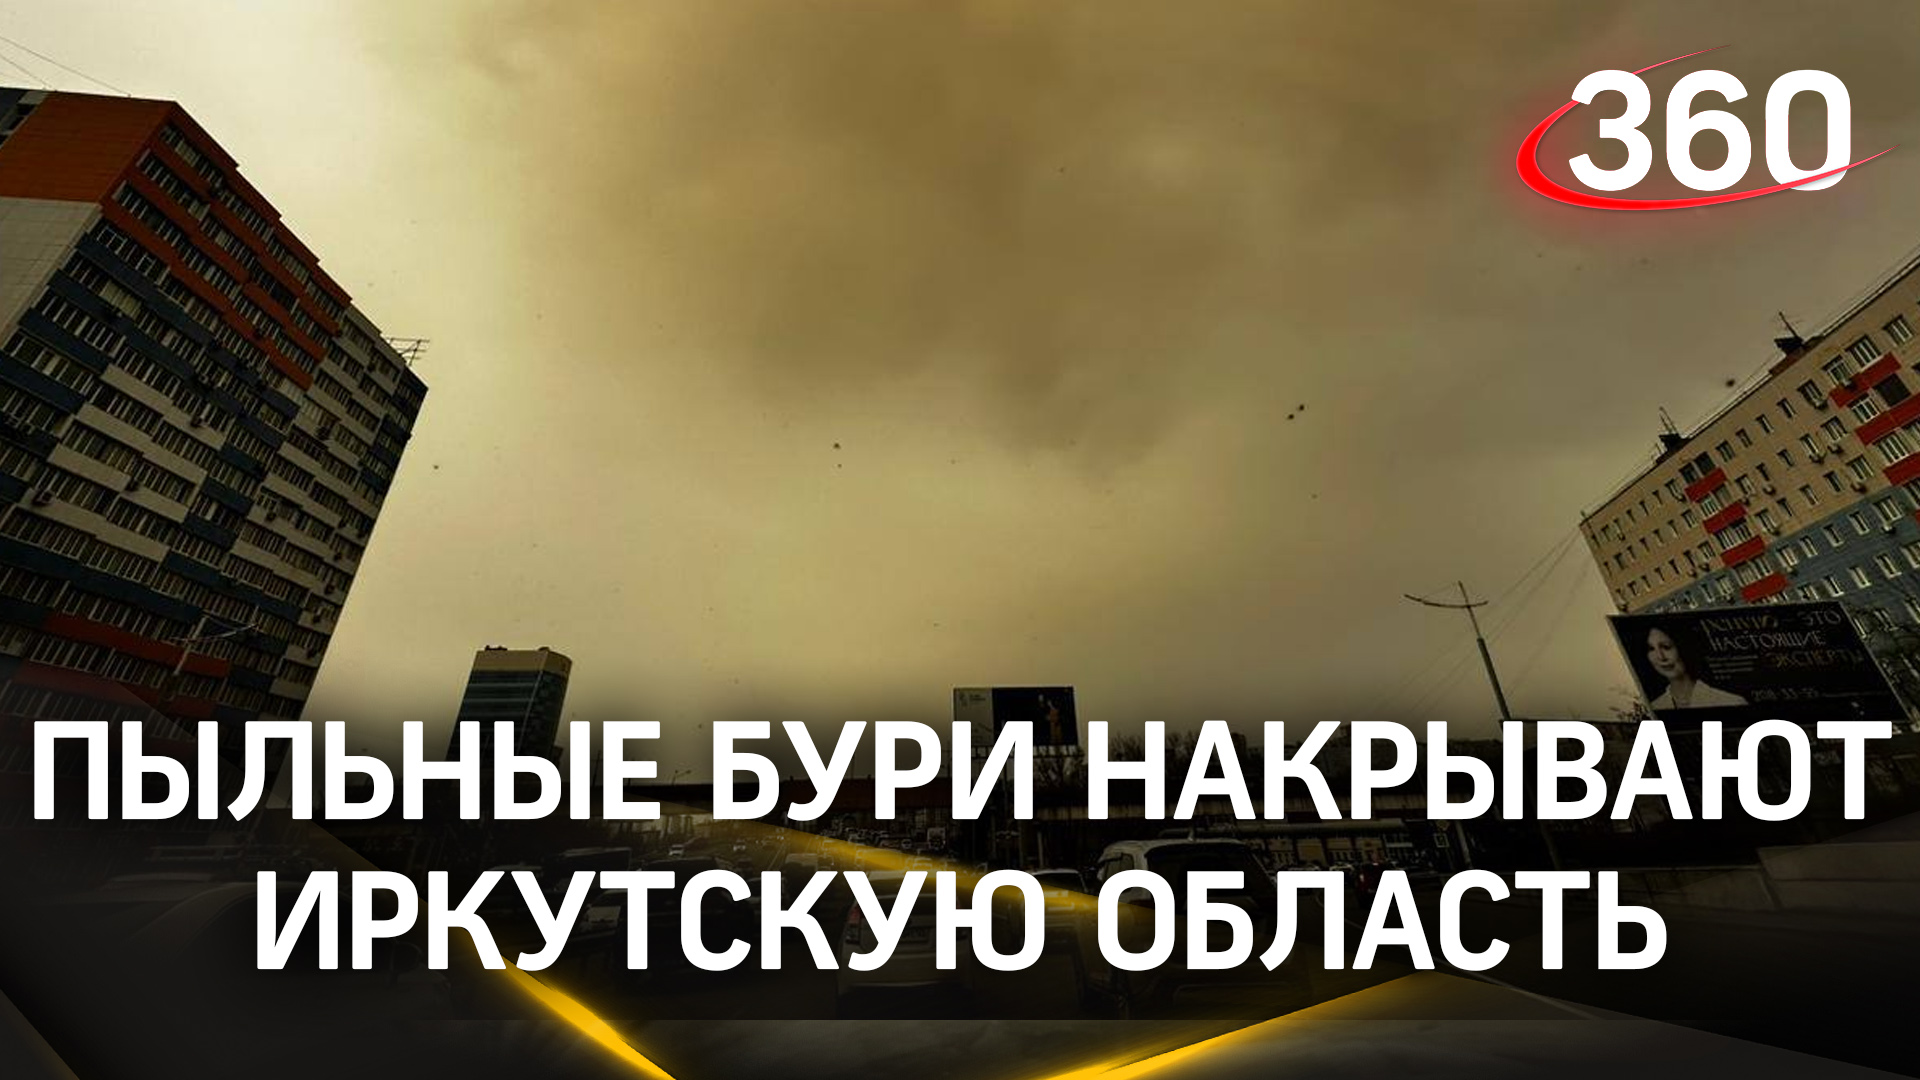 Просьба чистюль убрать от экрана: мощные пыльные бури накрывают Иркутскую область.